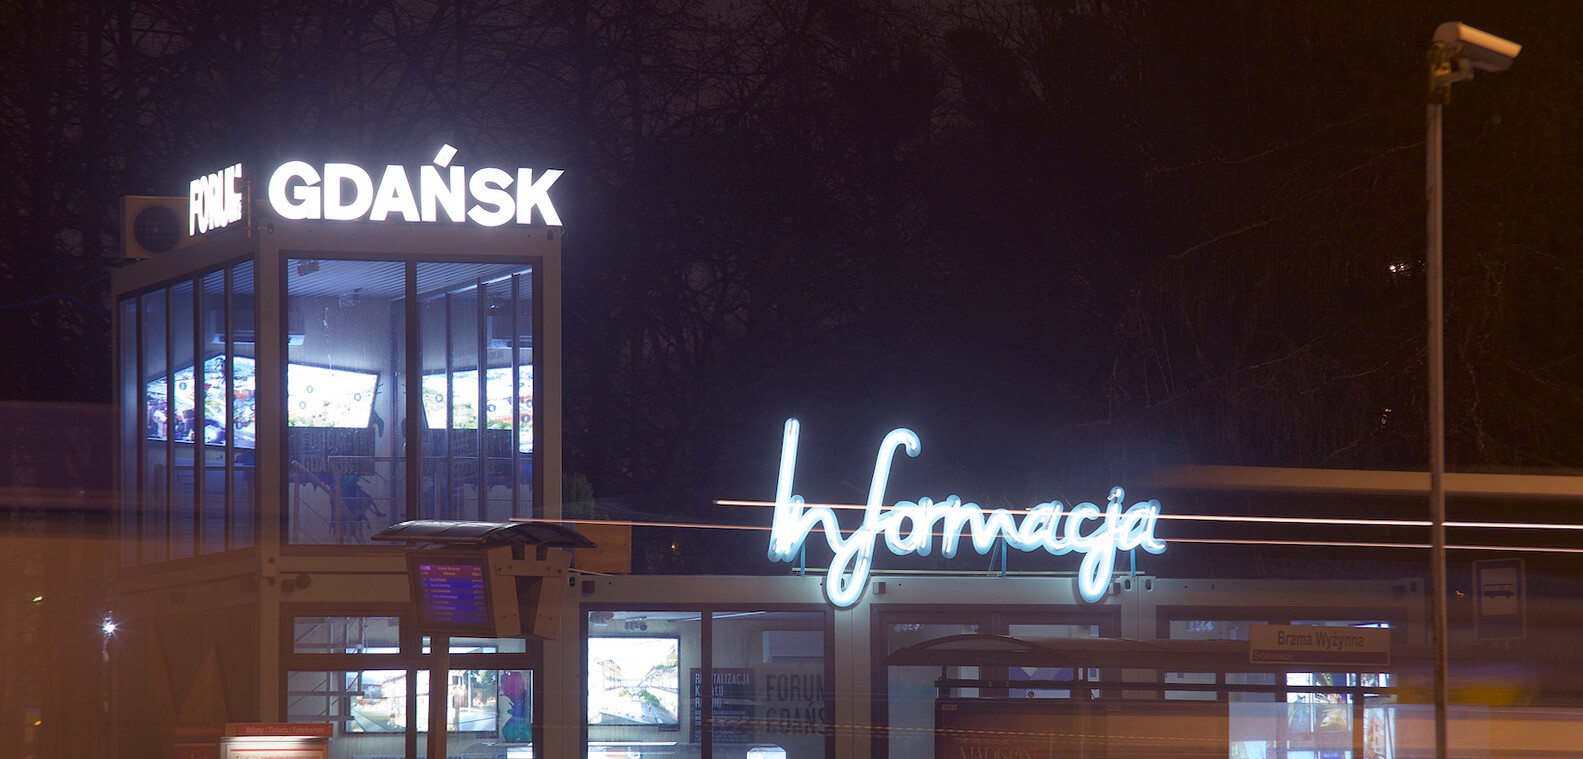 Forum Gdańsk informacja - Forum Gdańsk - napis informacja stworzony z neonów, zamontowany na stelażu, znajdujący się nad wejściem